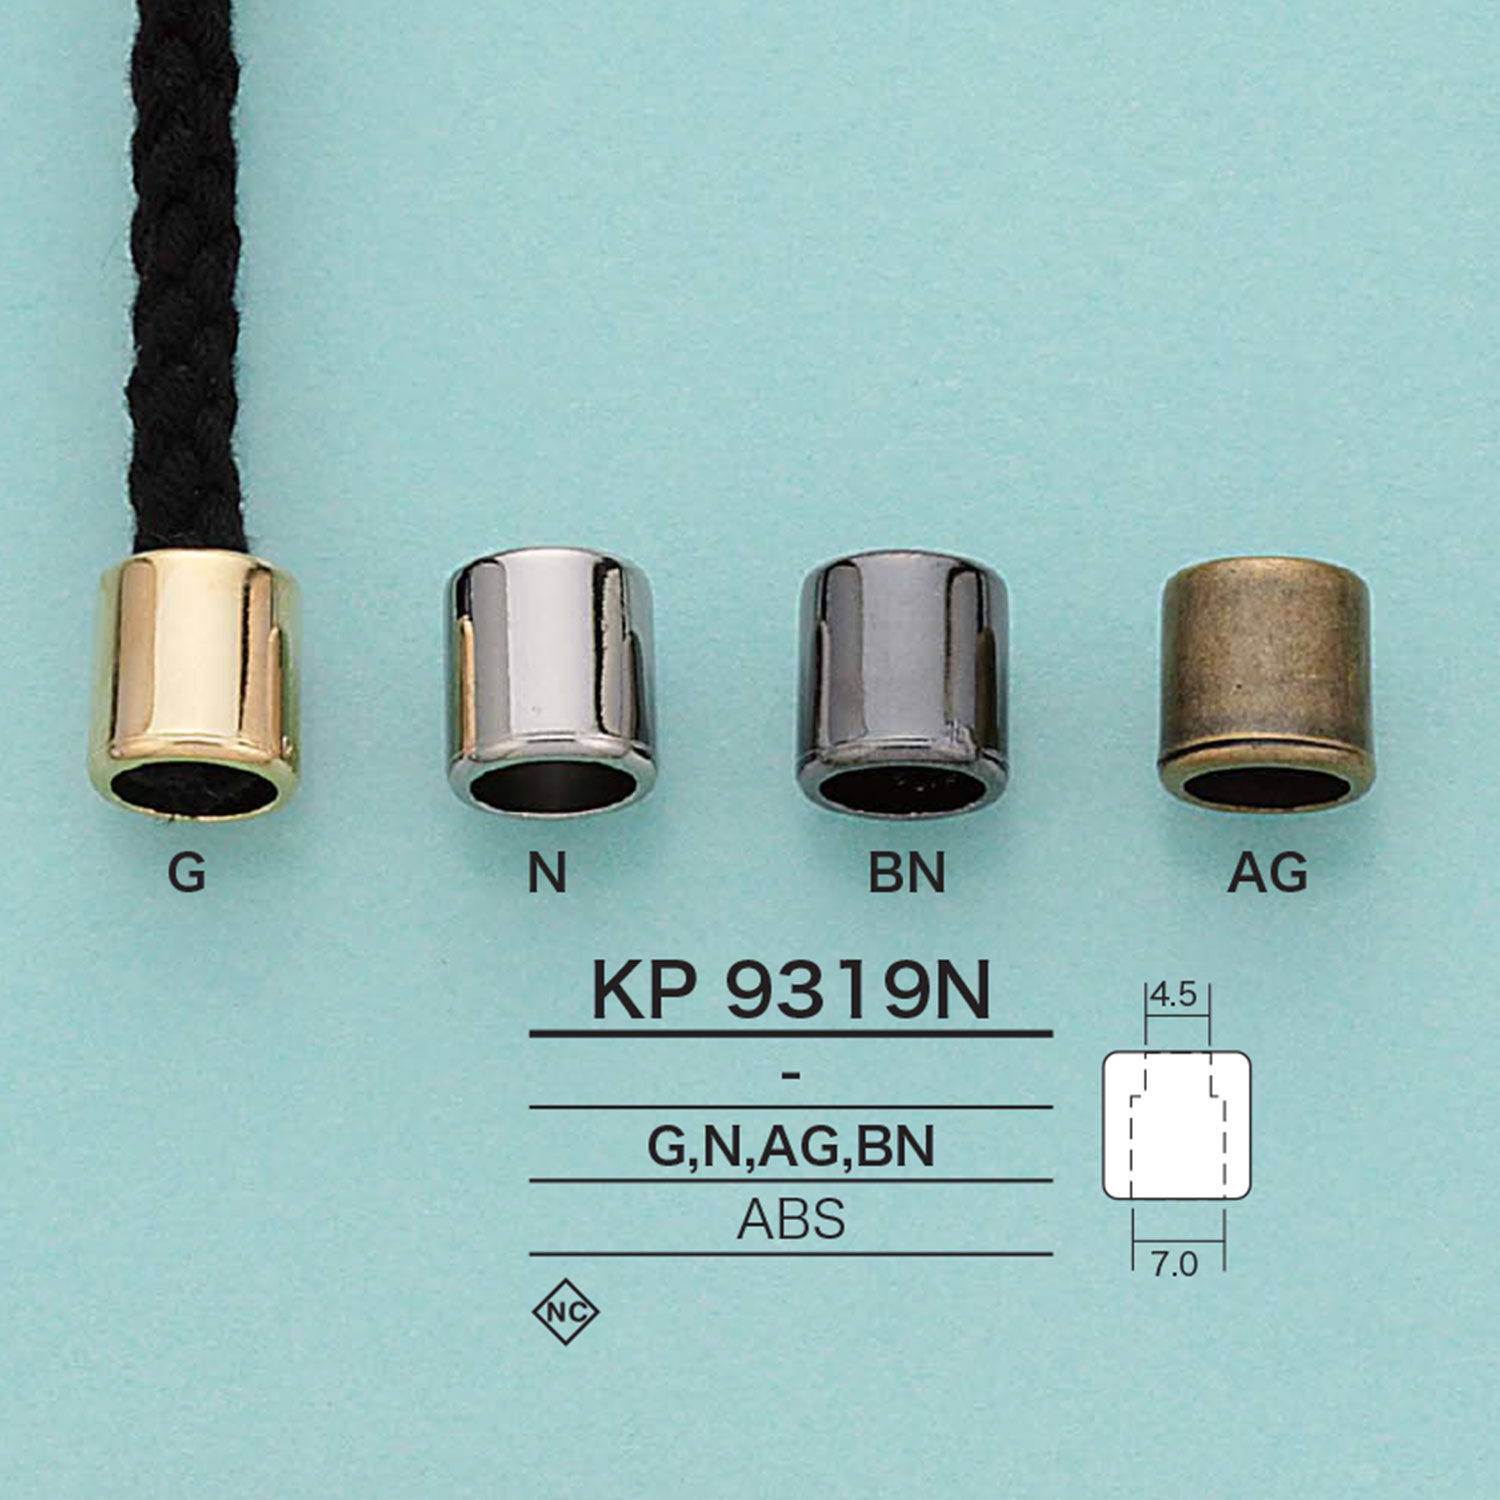 KP9319N Zylindrisches Kabelende (Plattierung)[Schnallen Und Ring] IRIS